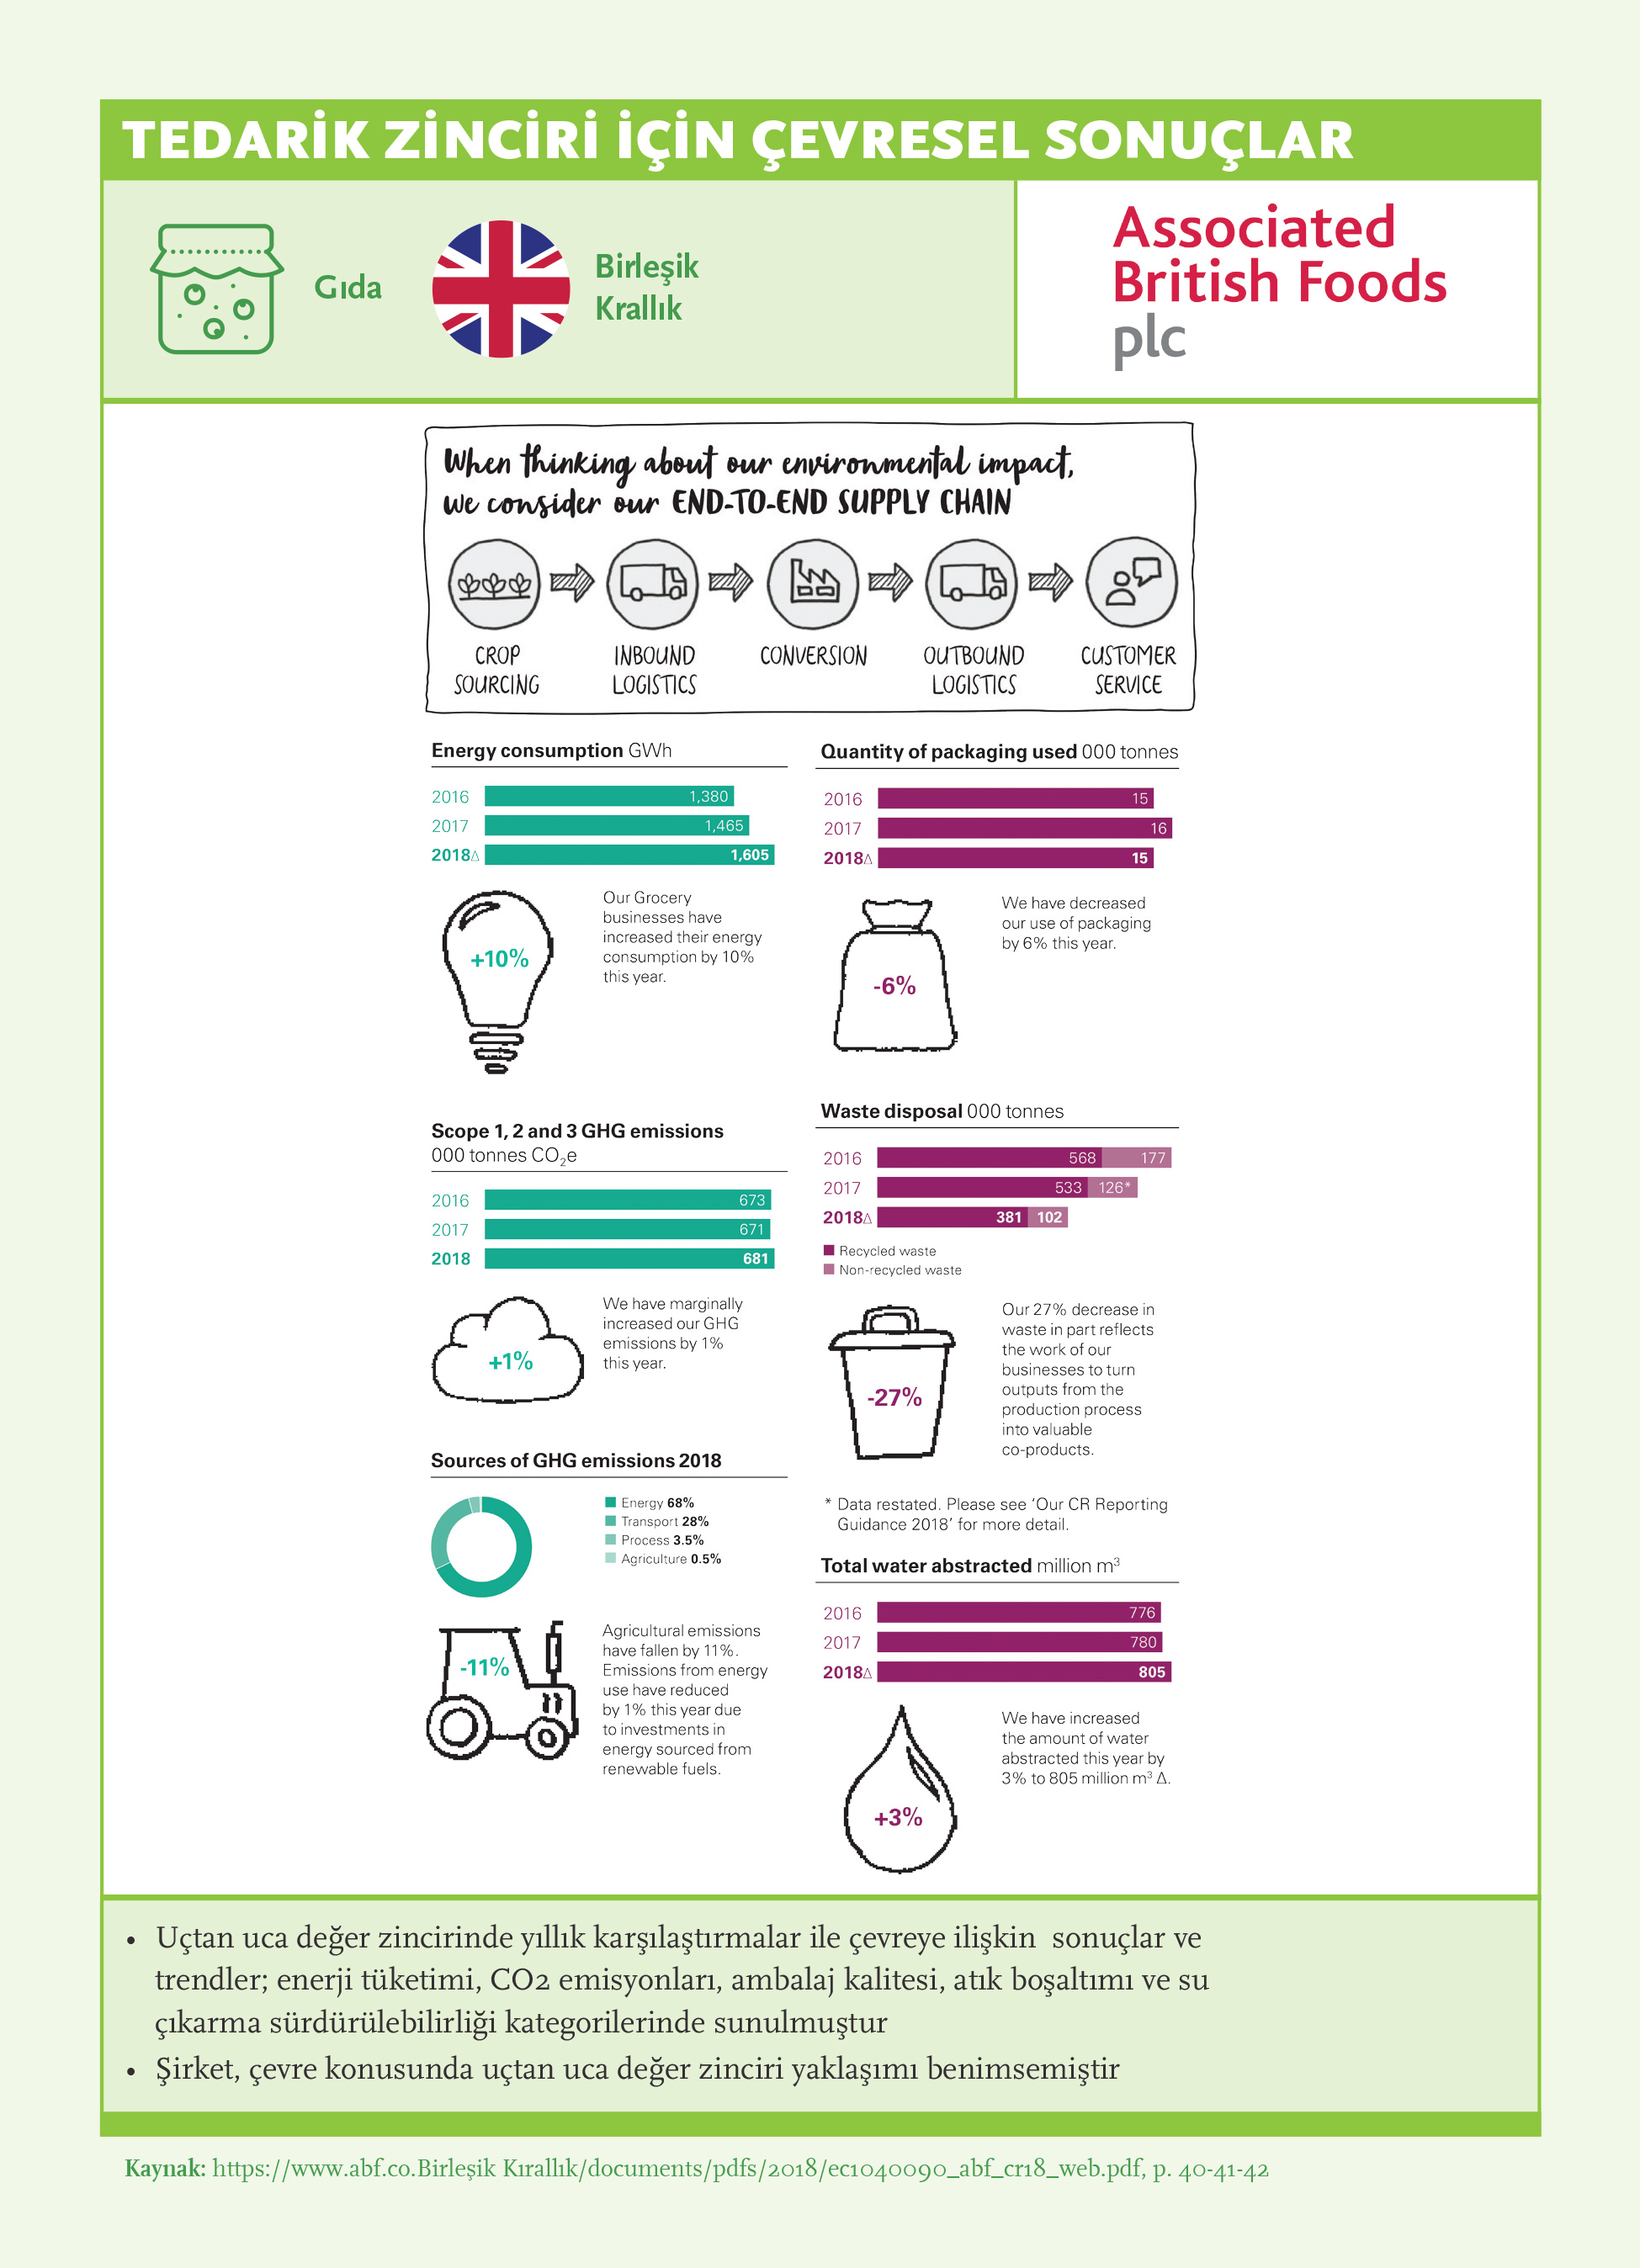 Tedarik Zinciri için Çevresel Sorunlar: Associated British Foods